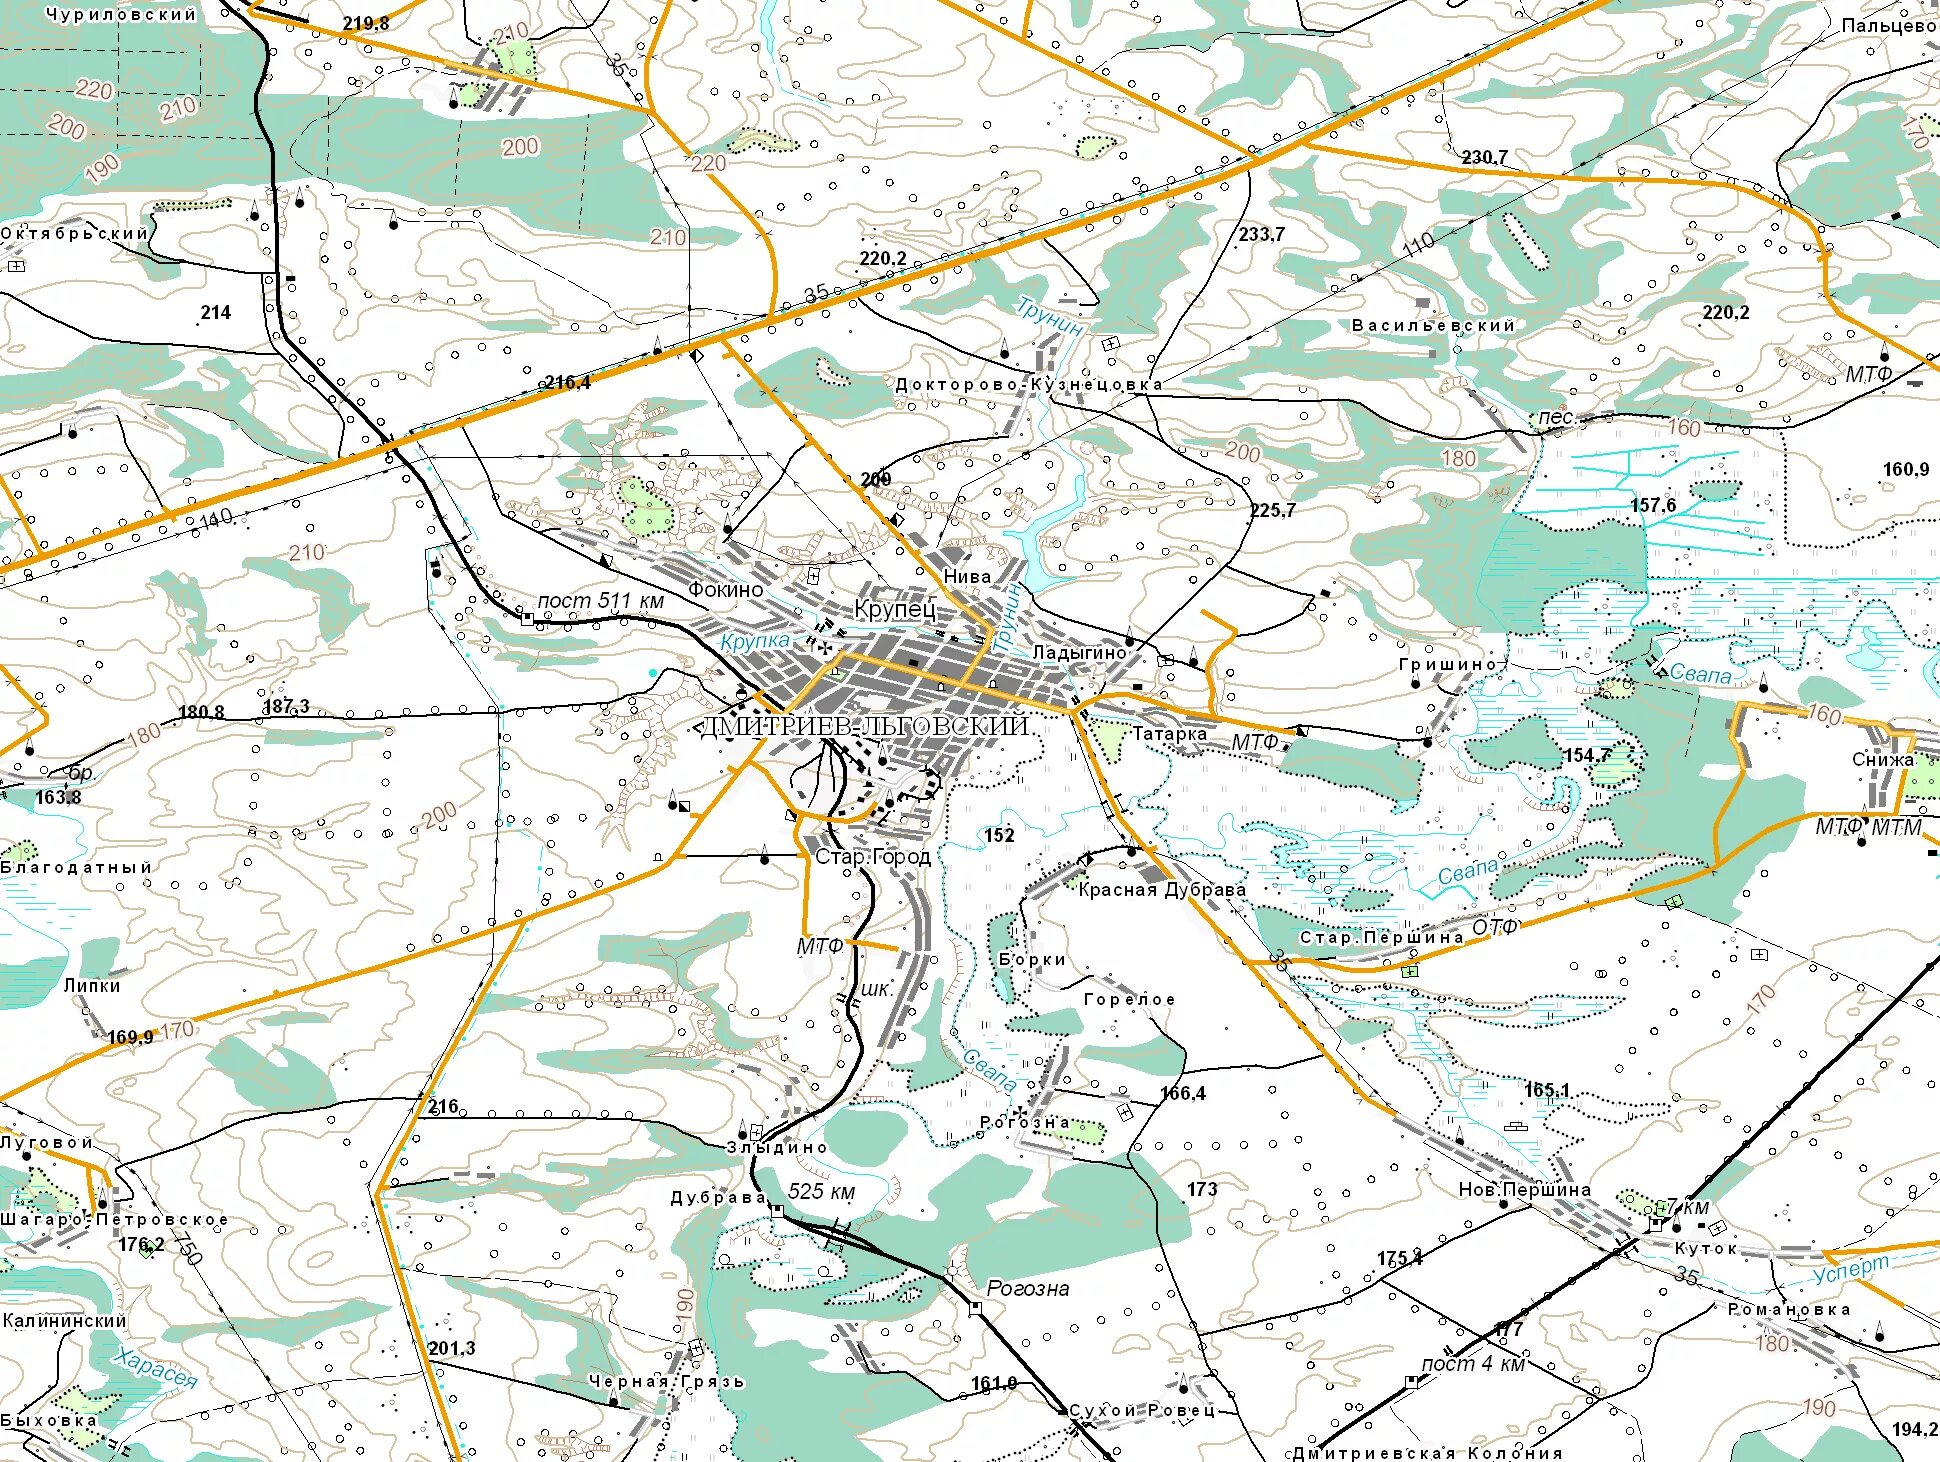 Цифровая топографическая карта. Цифровая карта города. Создание и обновление крупномасштабных цифровых карт и планов. Цифровые топографические карты 3d в армии. Карта м 0